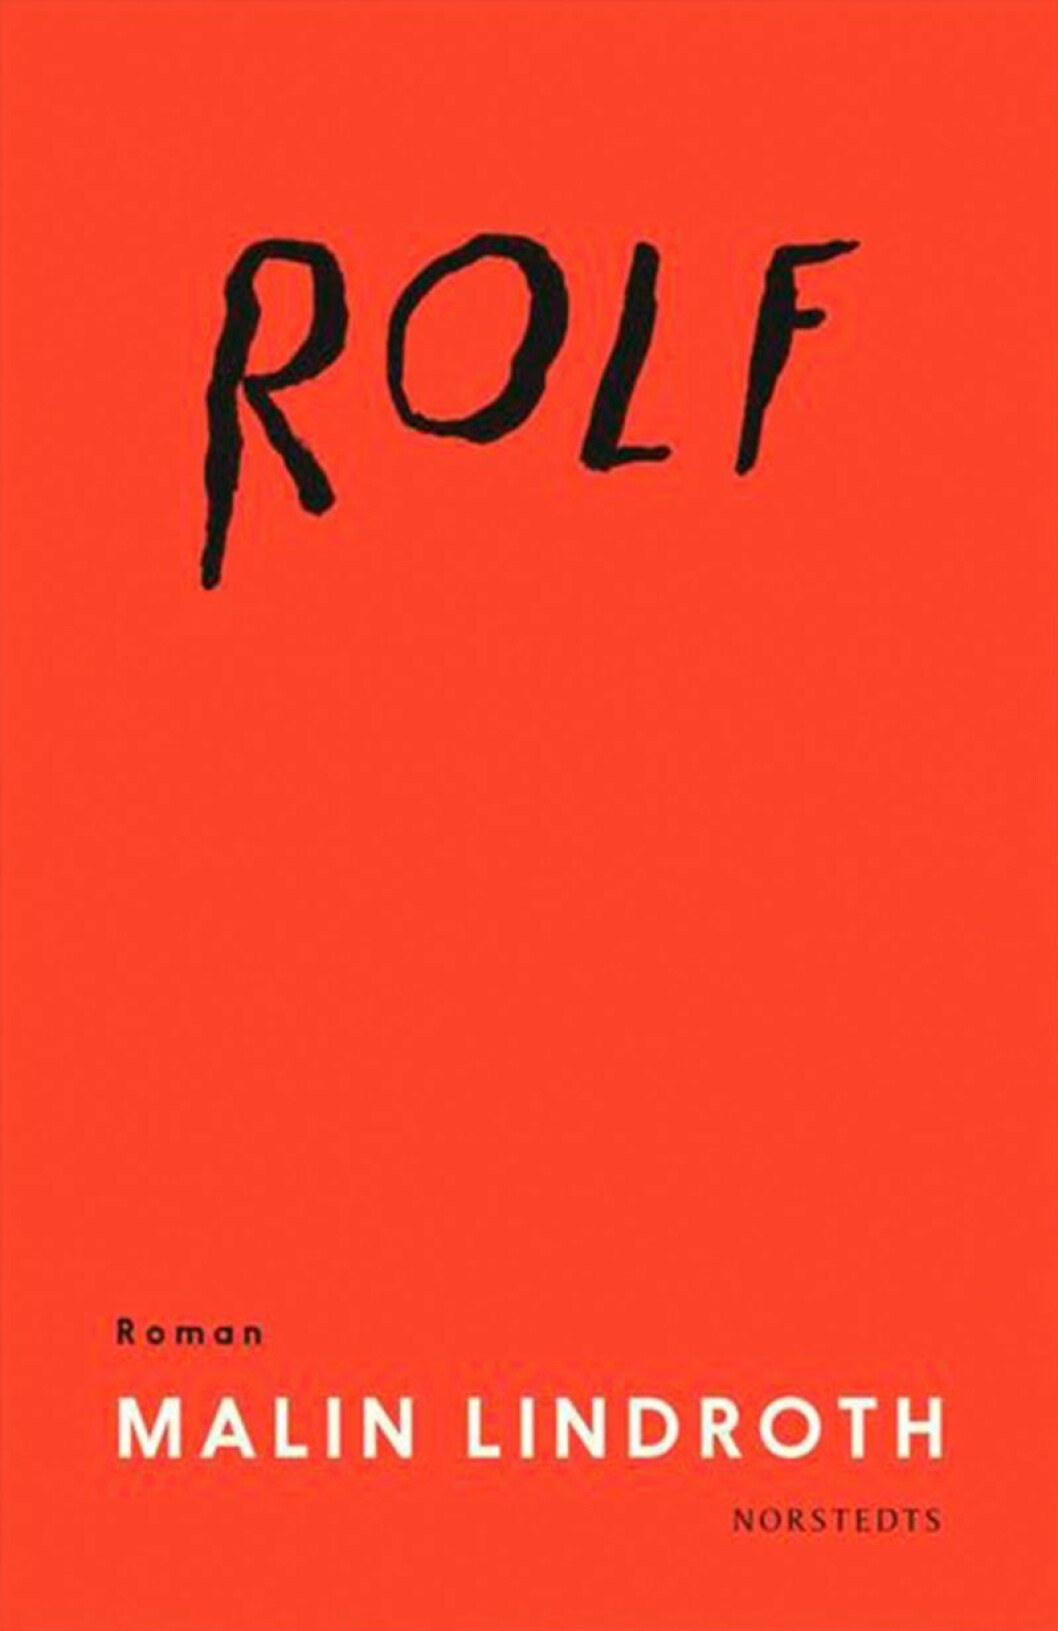 Bokomslag till Rolf, Röd framsida med texten Rolf handskrivet.